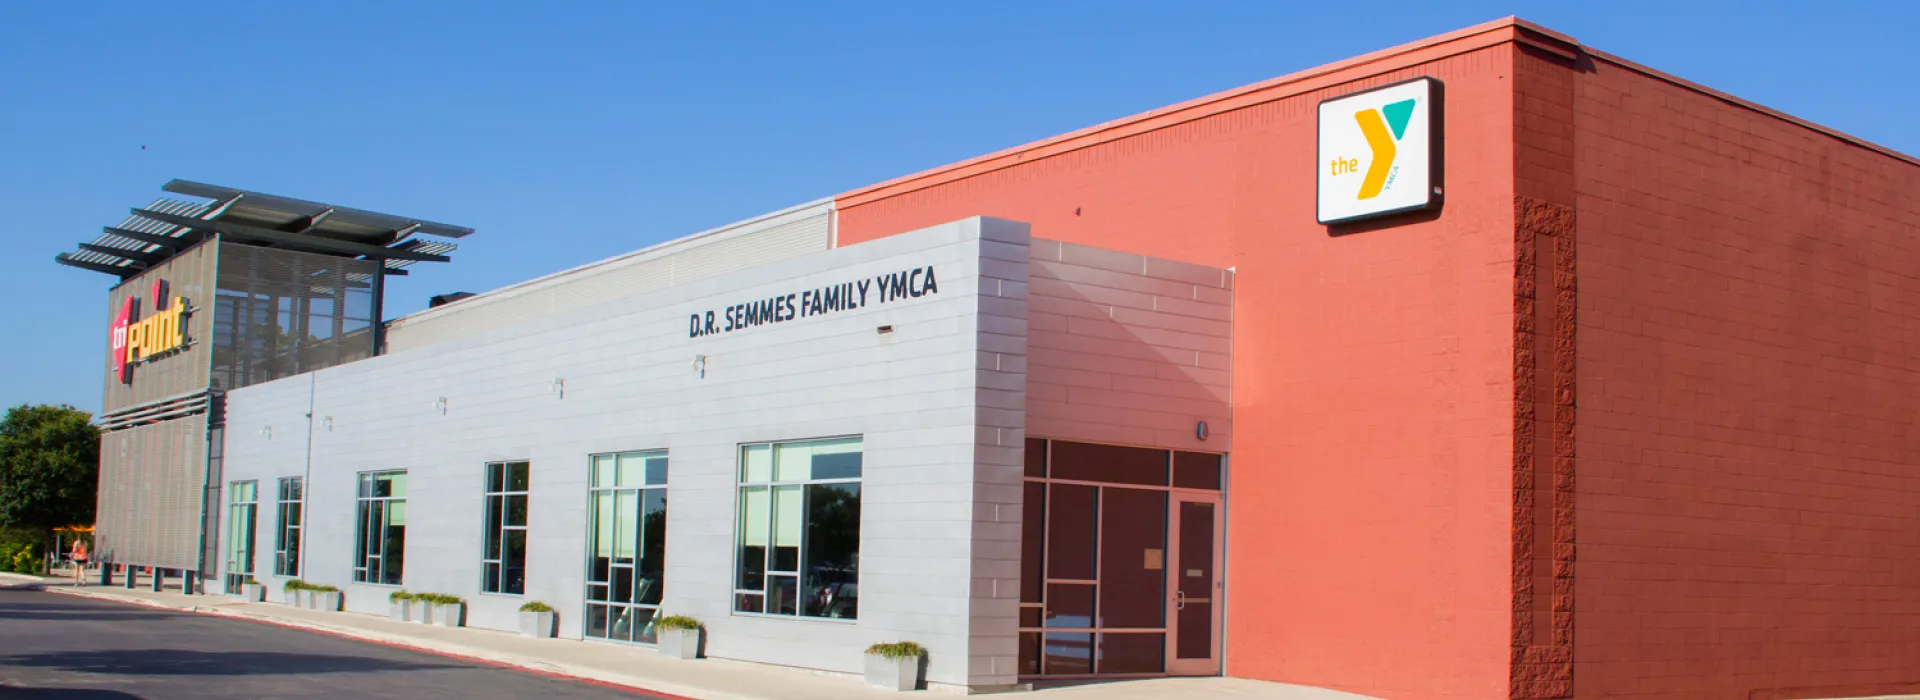 D.R. Semmes Family YMCA Building